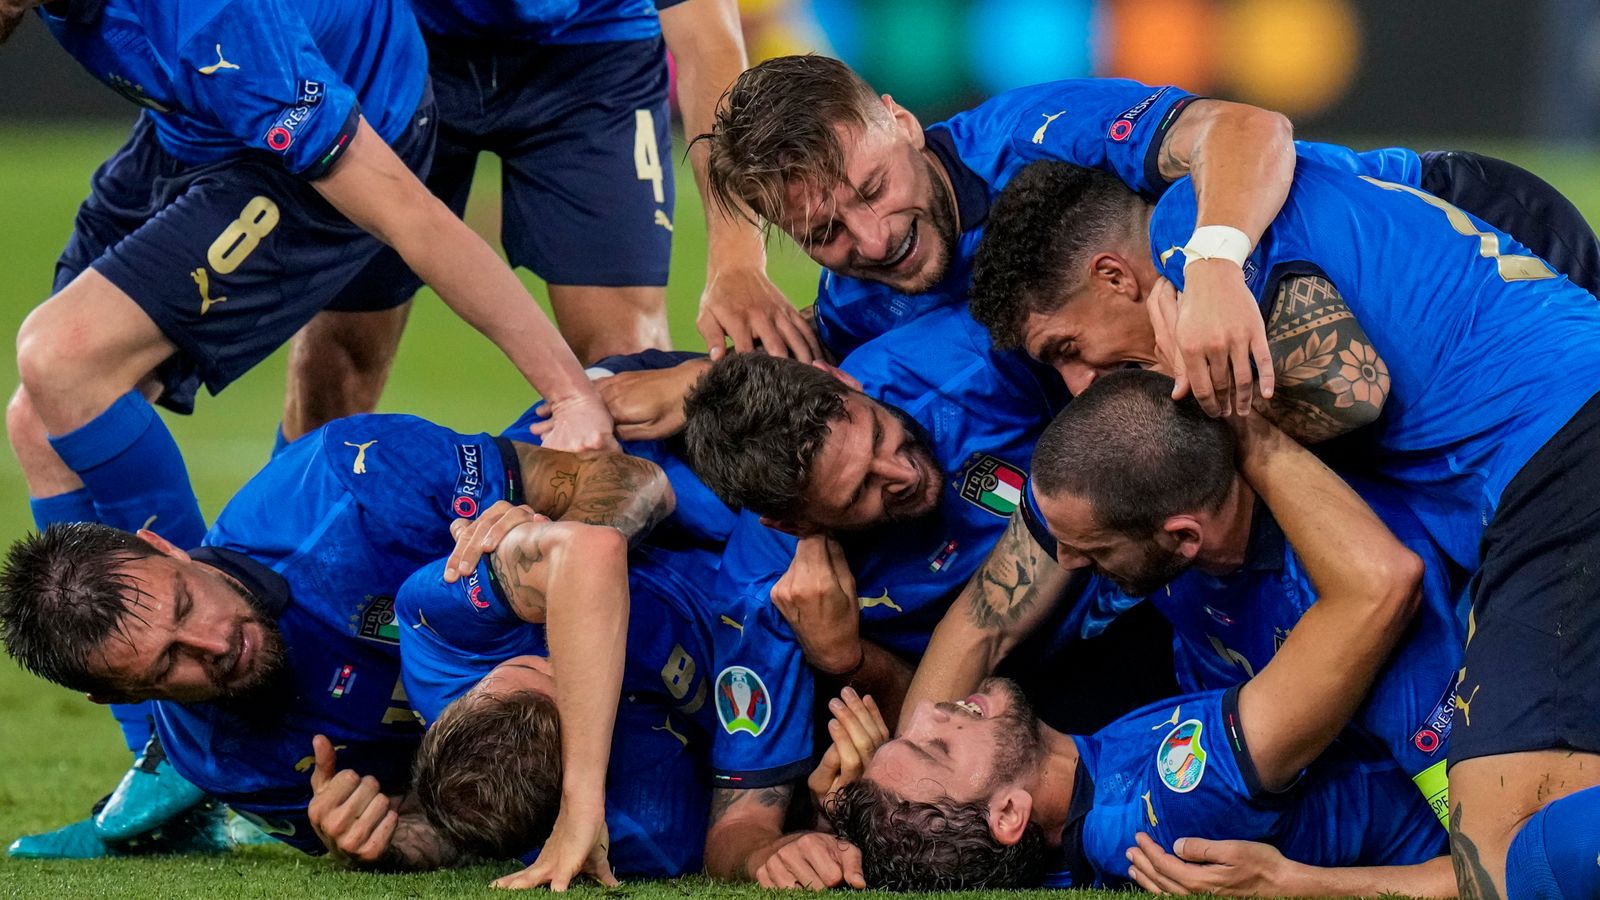 Đội tuyển Ý đã chơi tấn công phóng khoáng hơn, thay vì phòng ngự theo kiểu catenaccio truyền thống